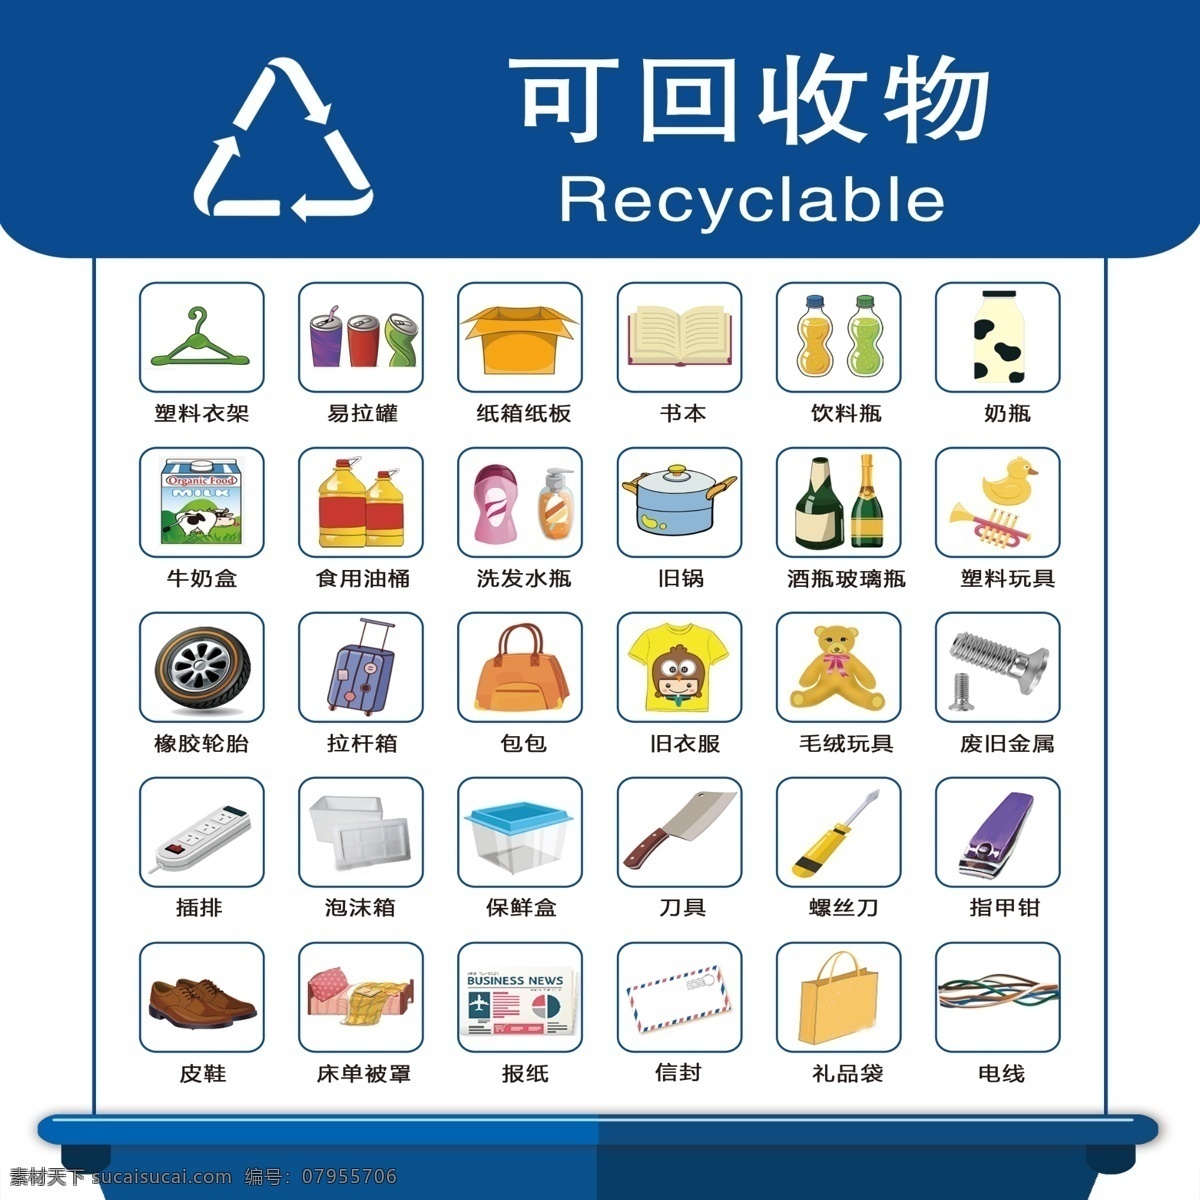 可回收物图片 北京市 垃圾 分类 可回收物 垃圾分类表